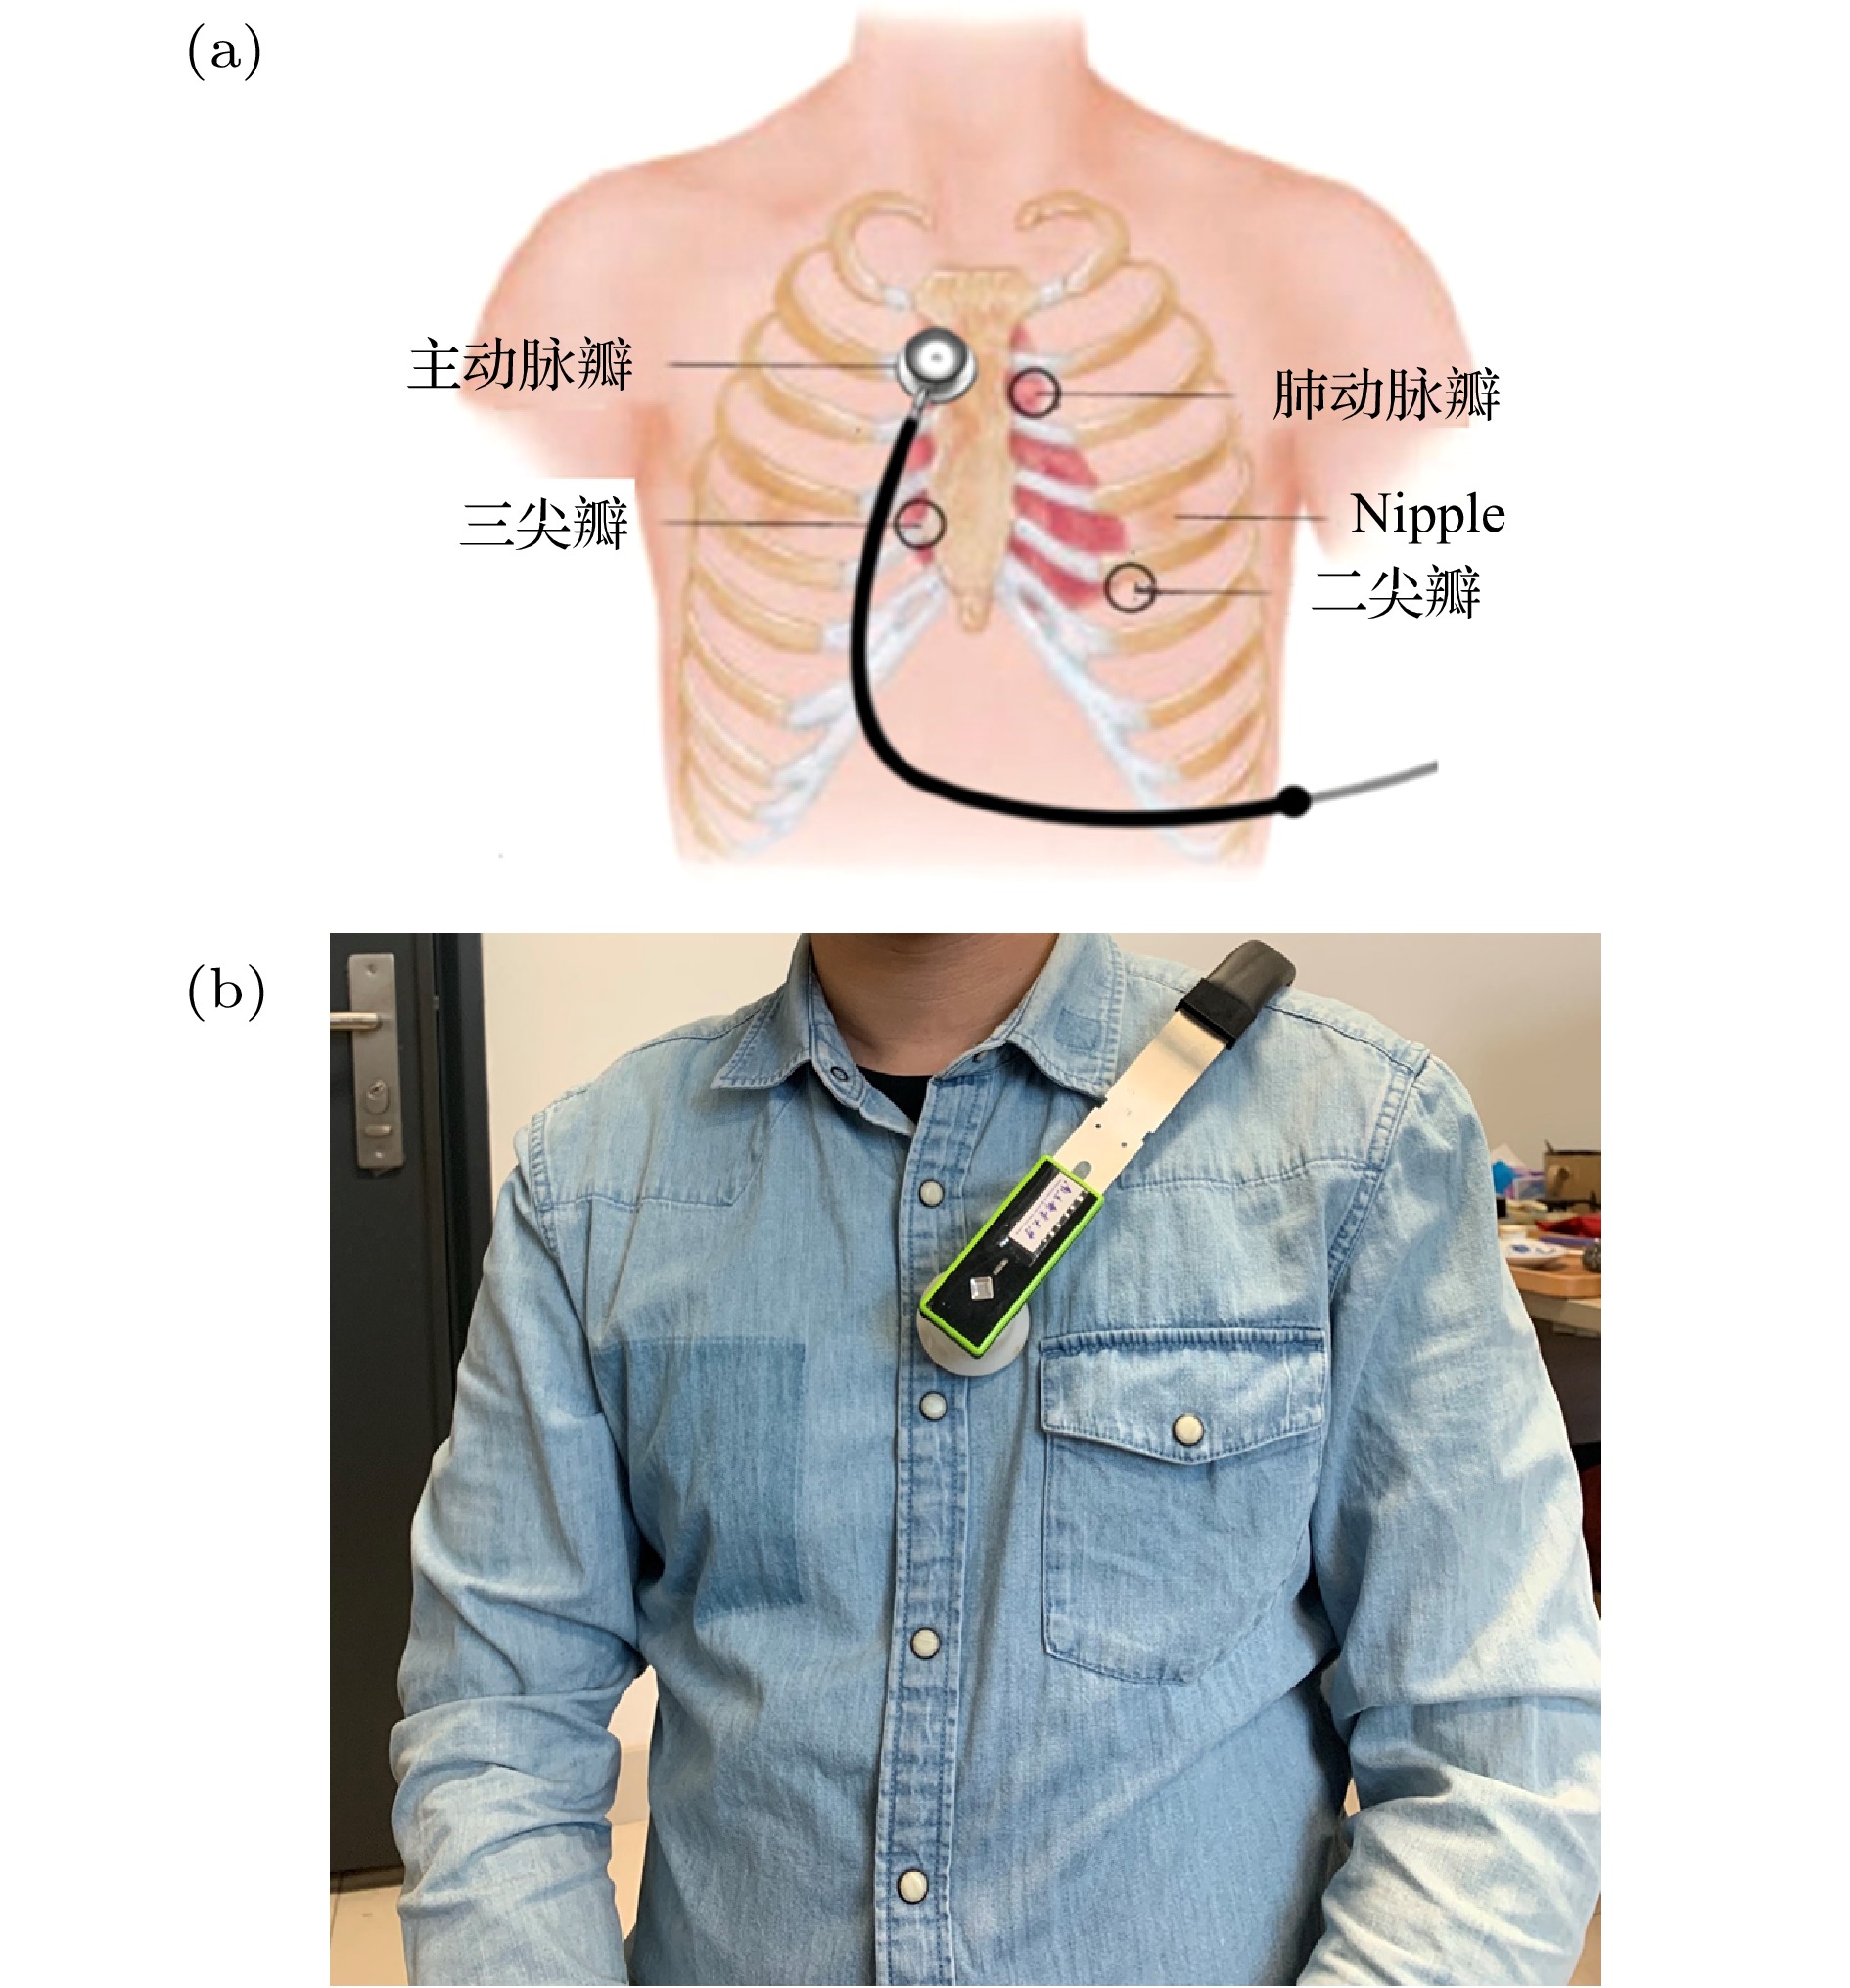 肺部听诊位置及顺序图图片